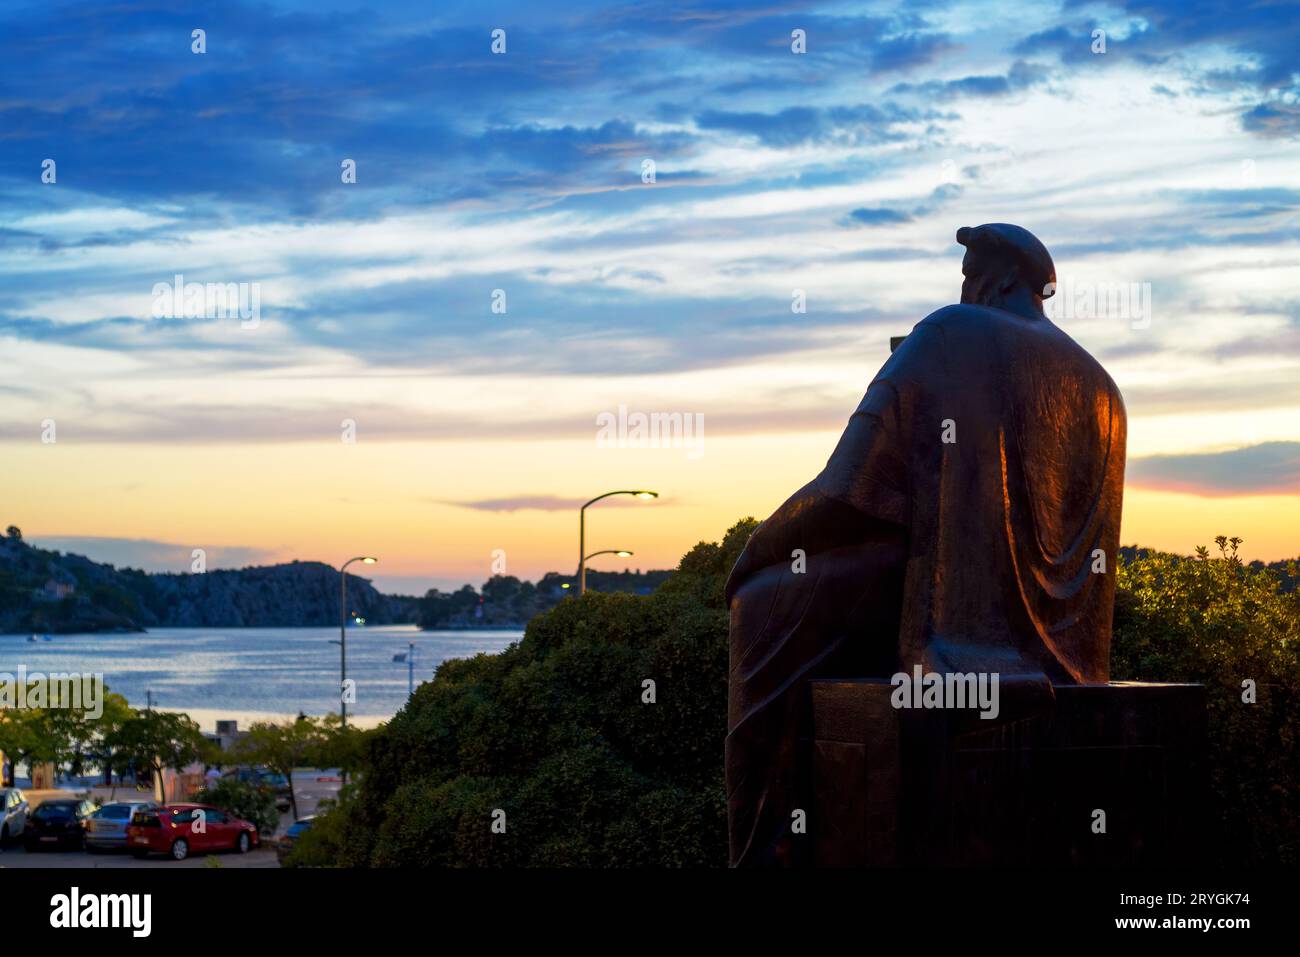 Statue du roi Petar Kresimir observant le port de sibenik, croatie Banque D'Images